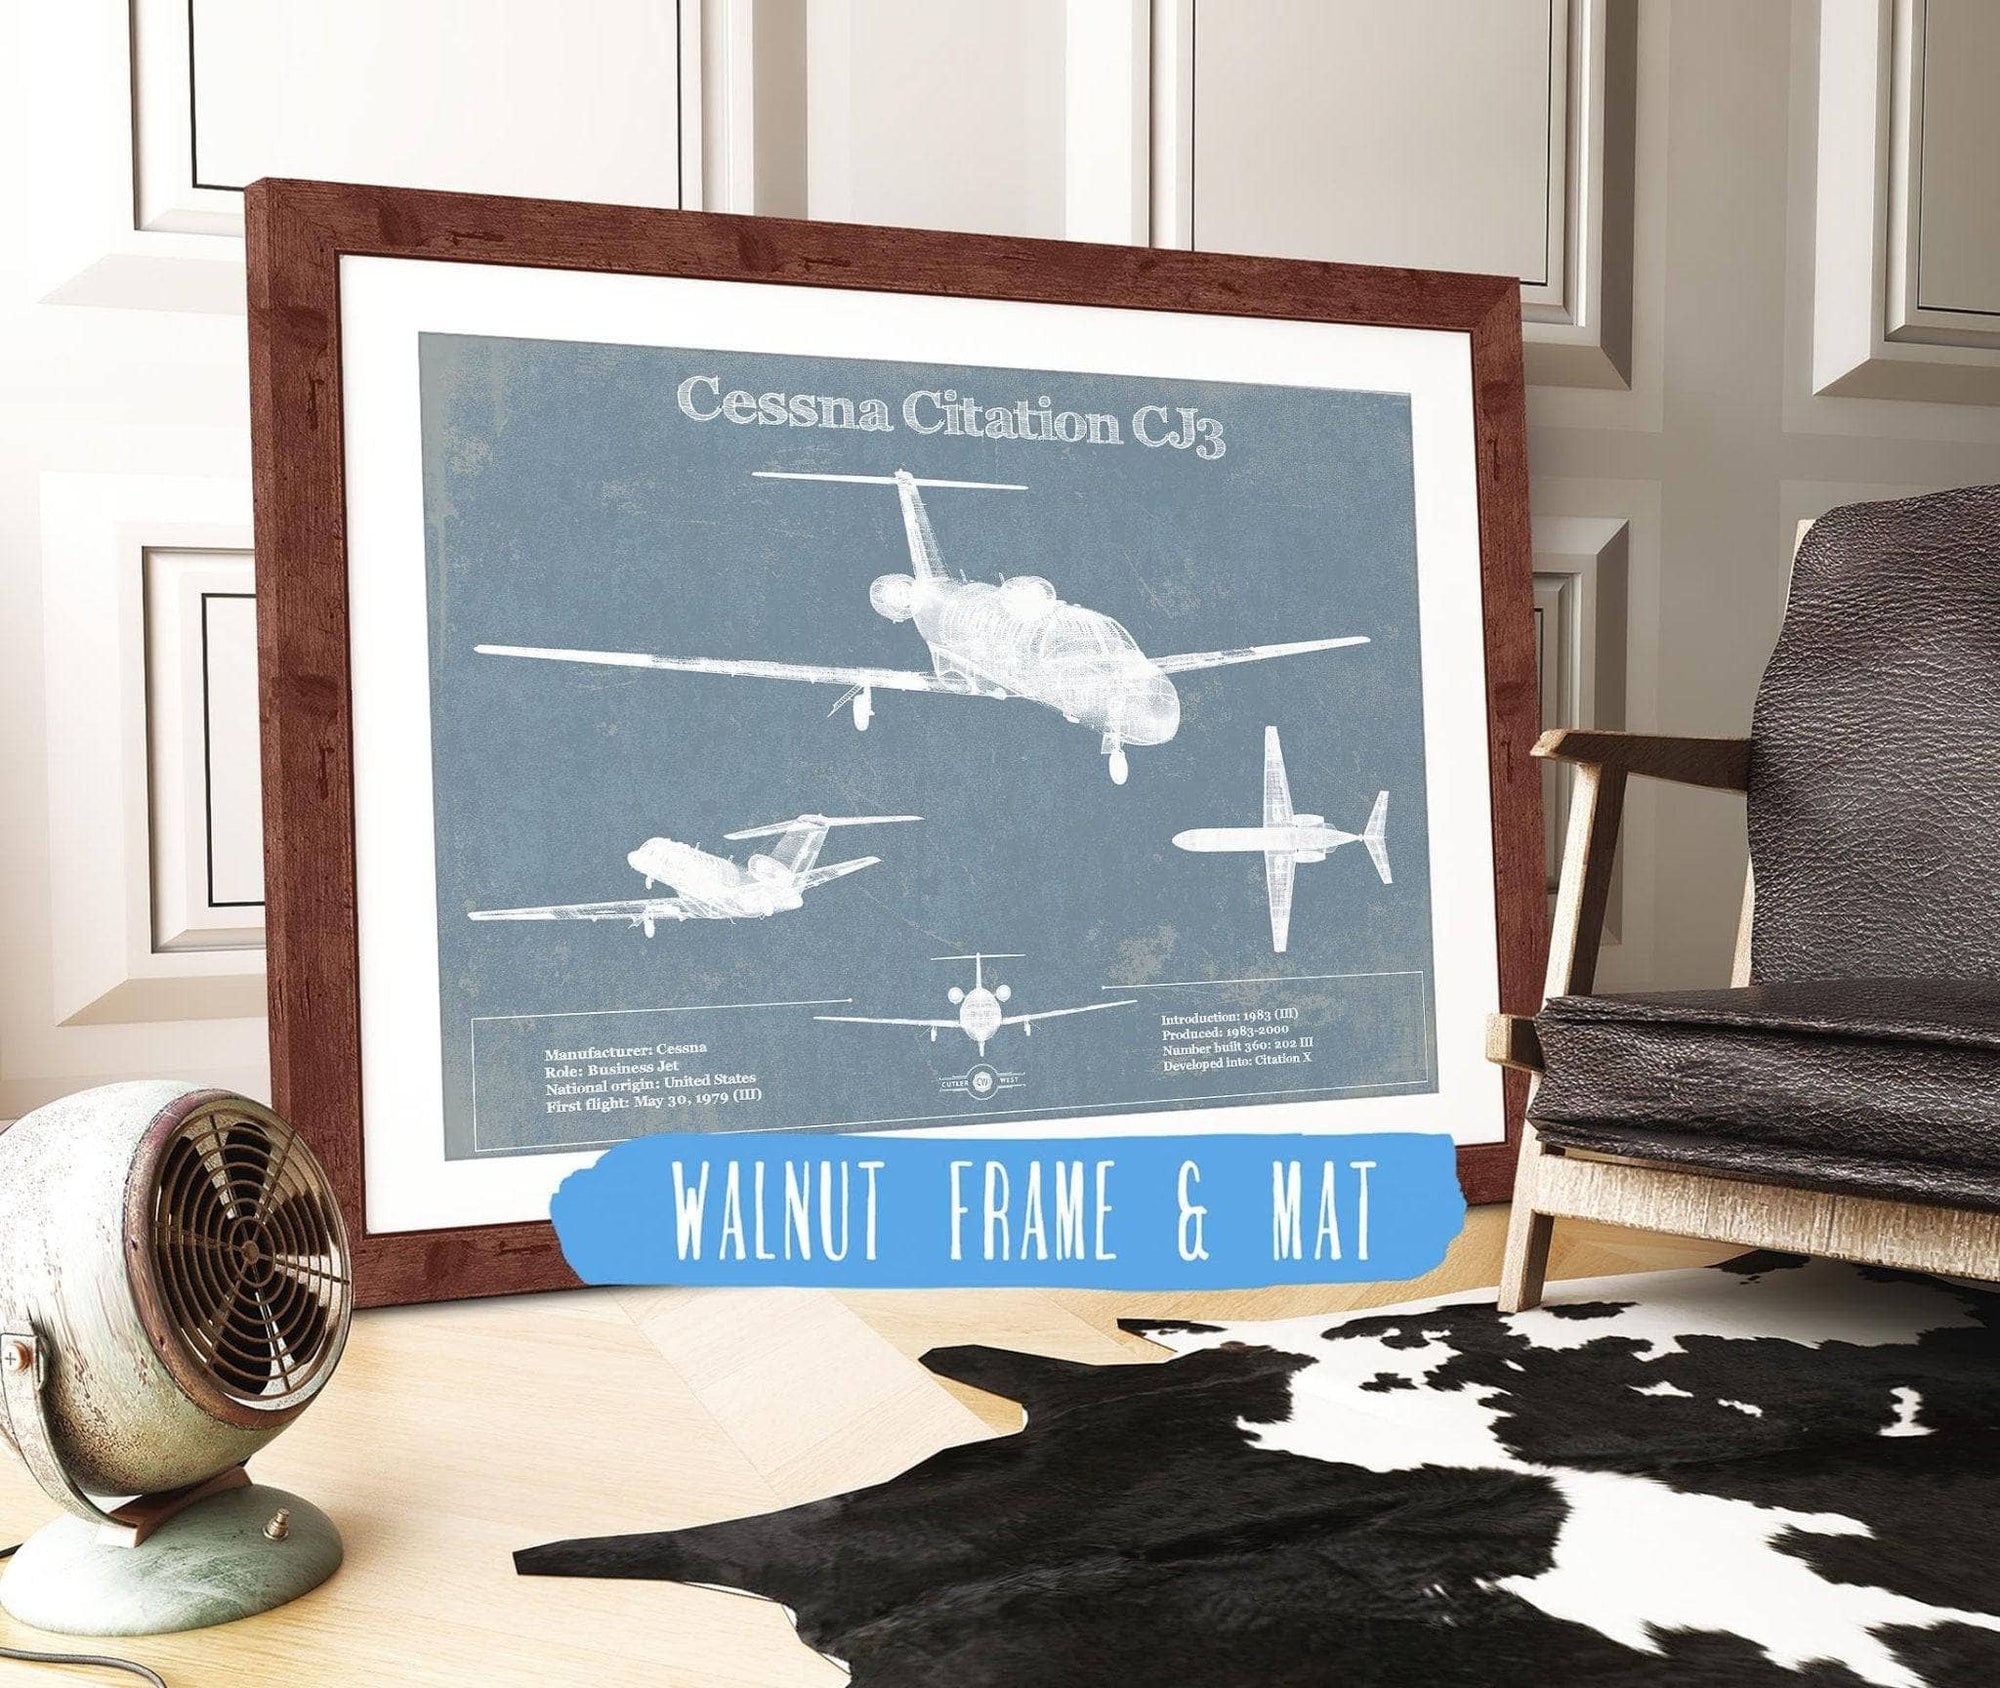 Cutler West Cessna Collection 14" x 11" / Walnut Frame & Mat Cessna Citation CJ3 Original Blueprint Art 845000290_49929